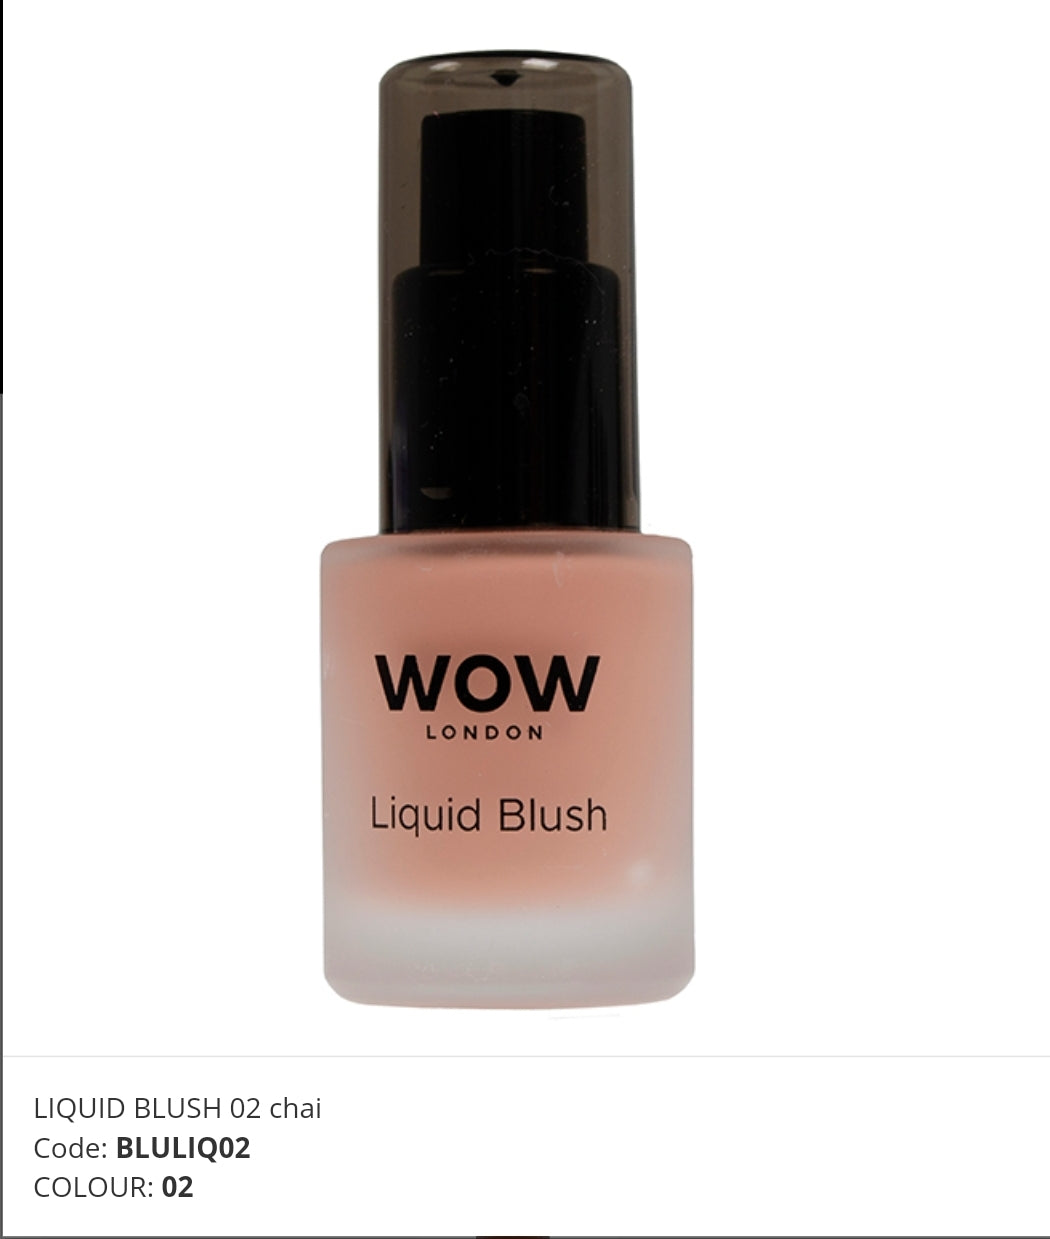 Wow Liquid Blush